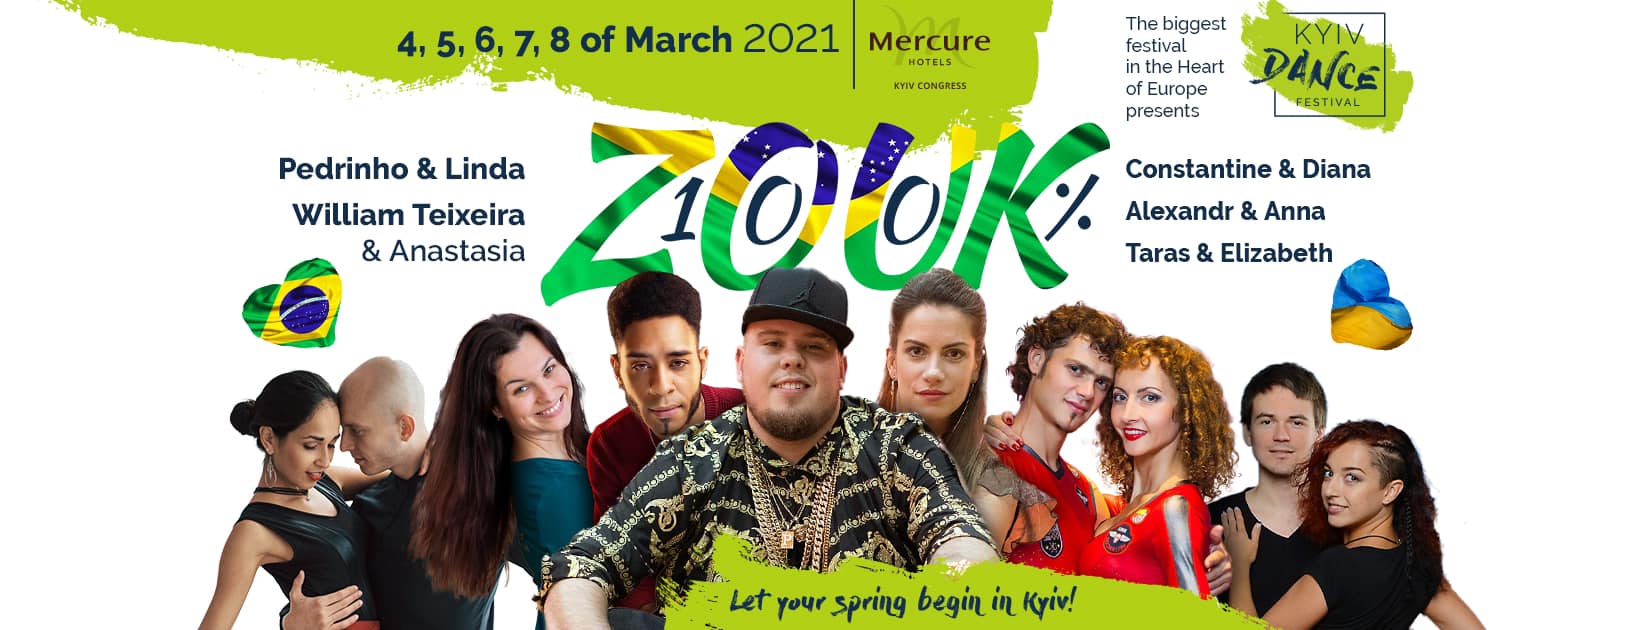 Zouk Festival, Kyiv Dance Festival 2021